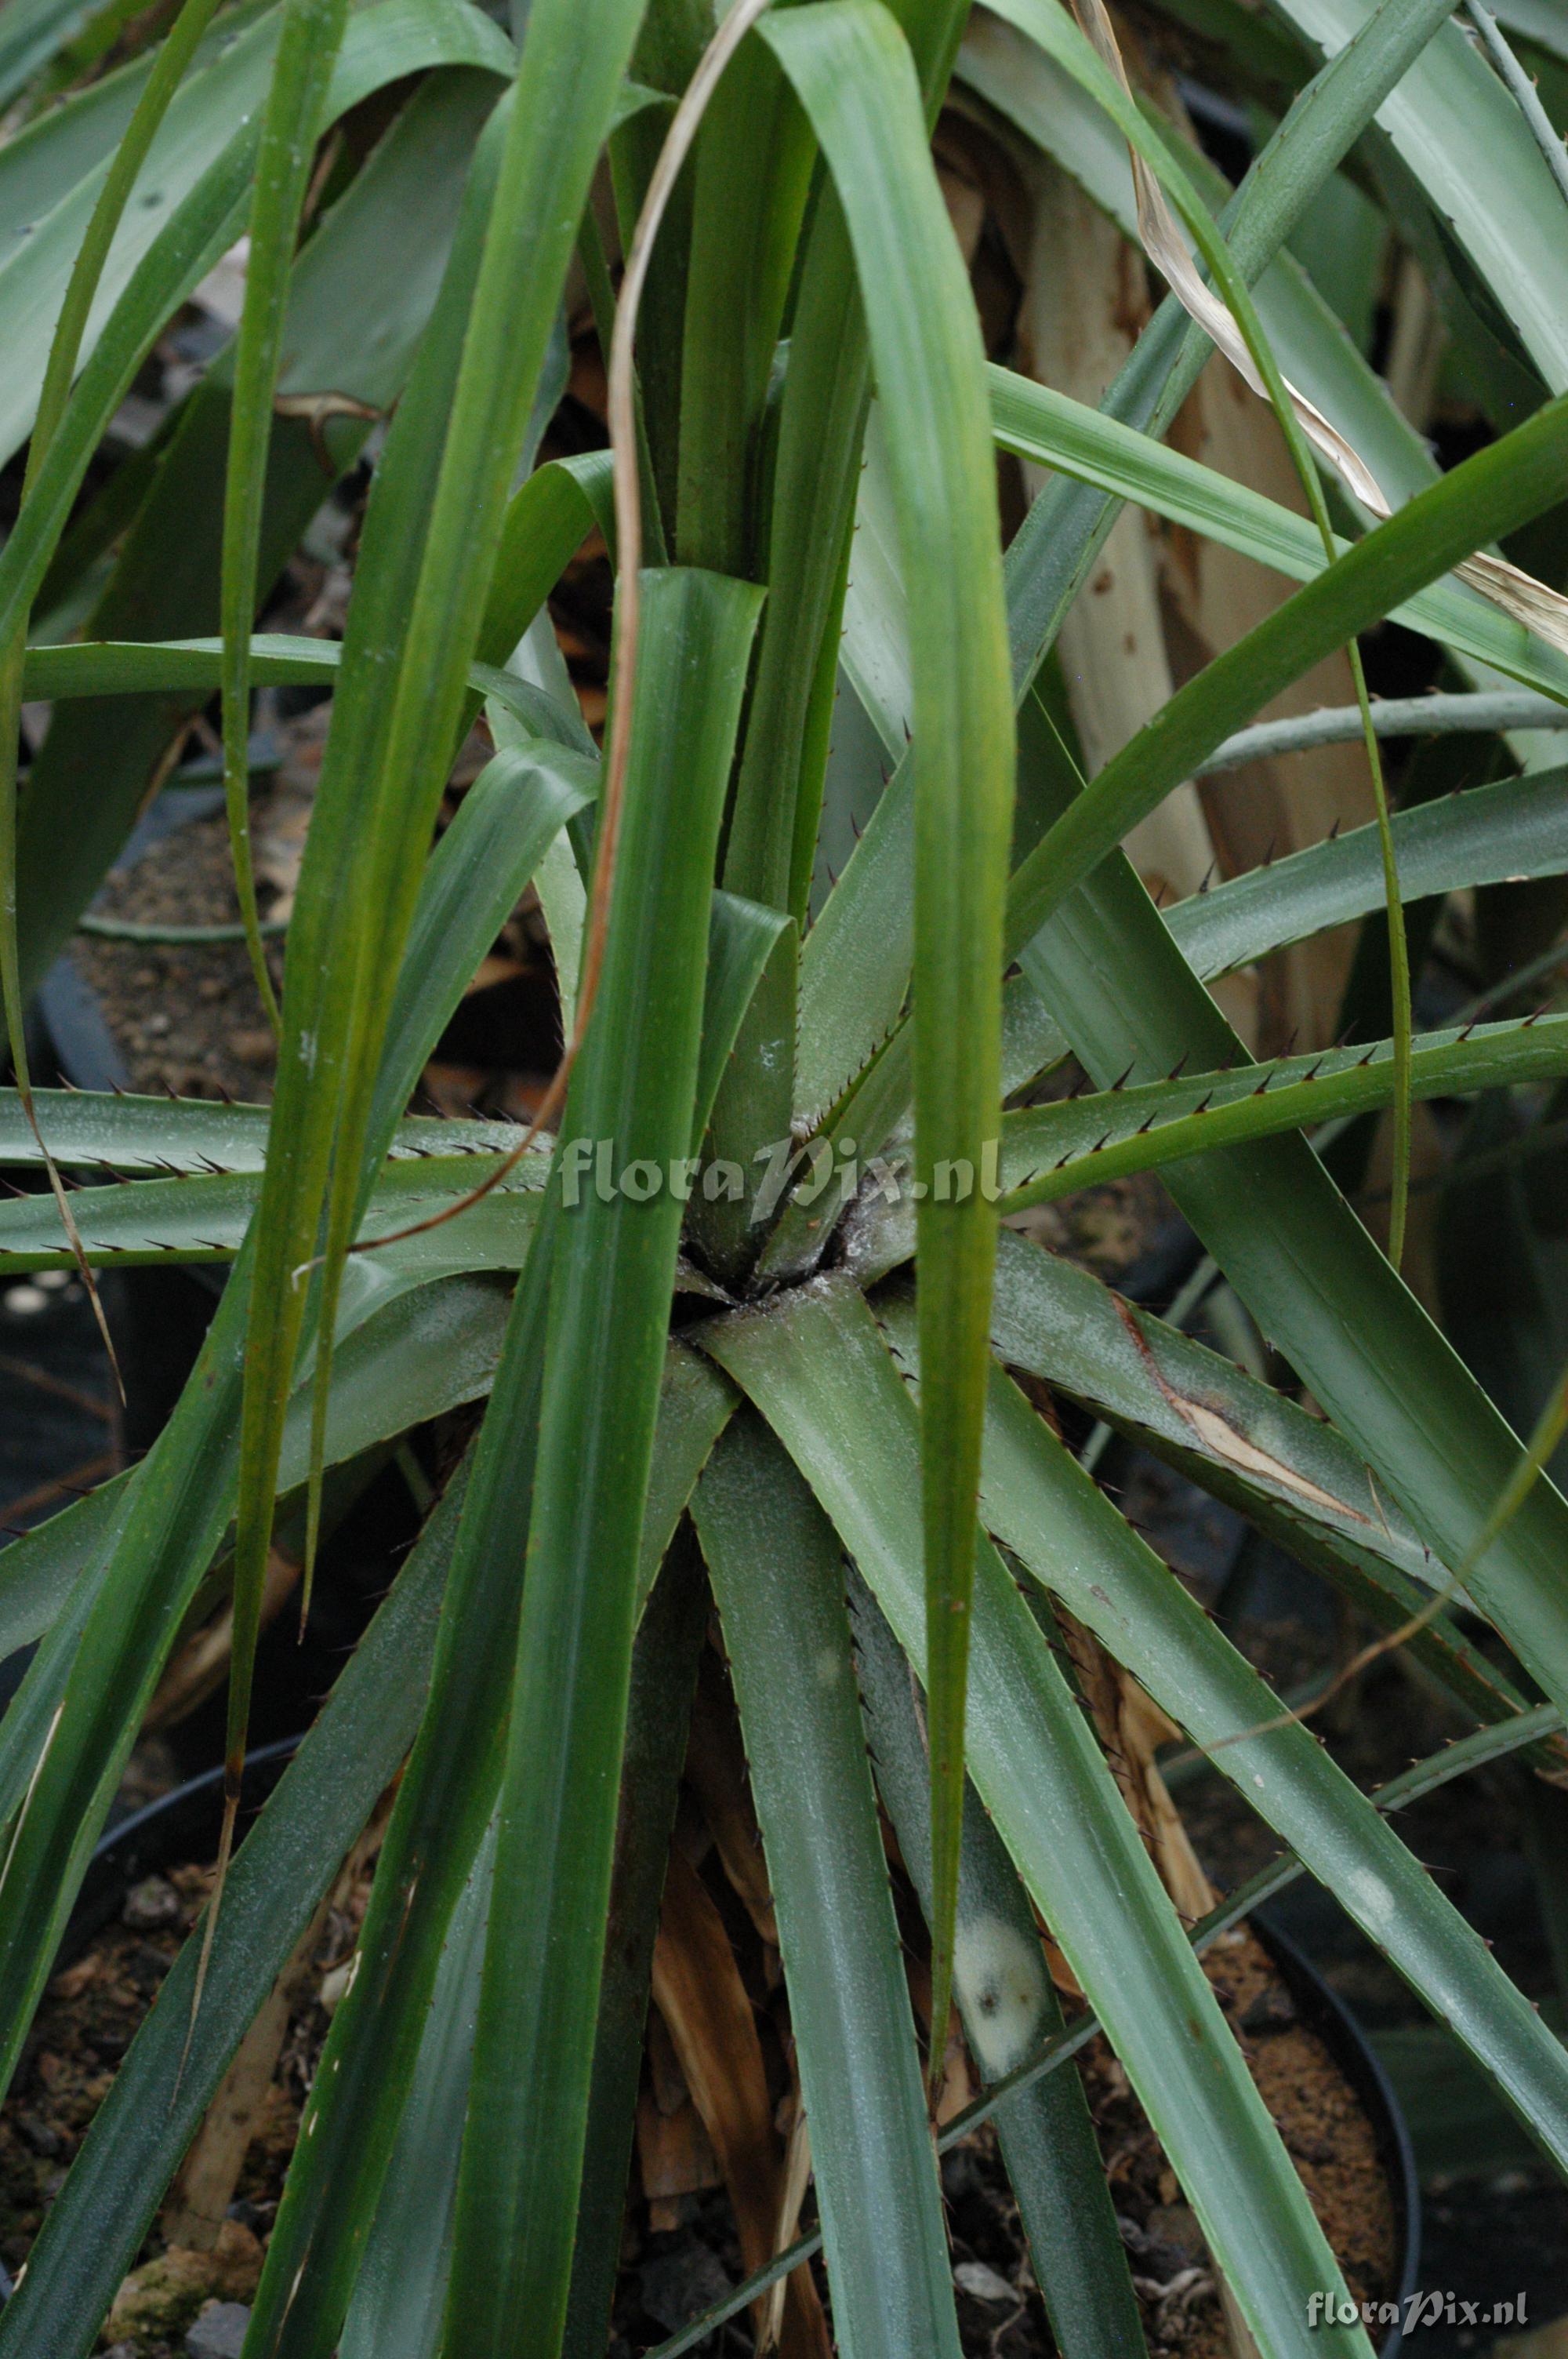 Puya ferruginea